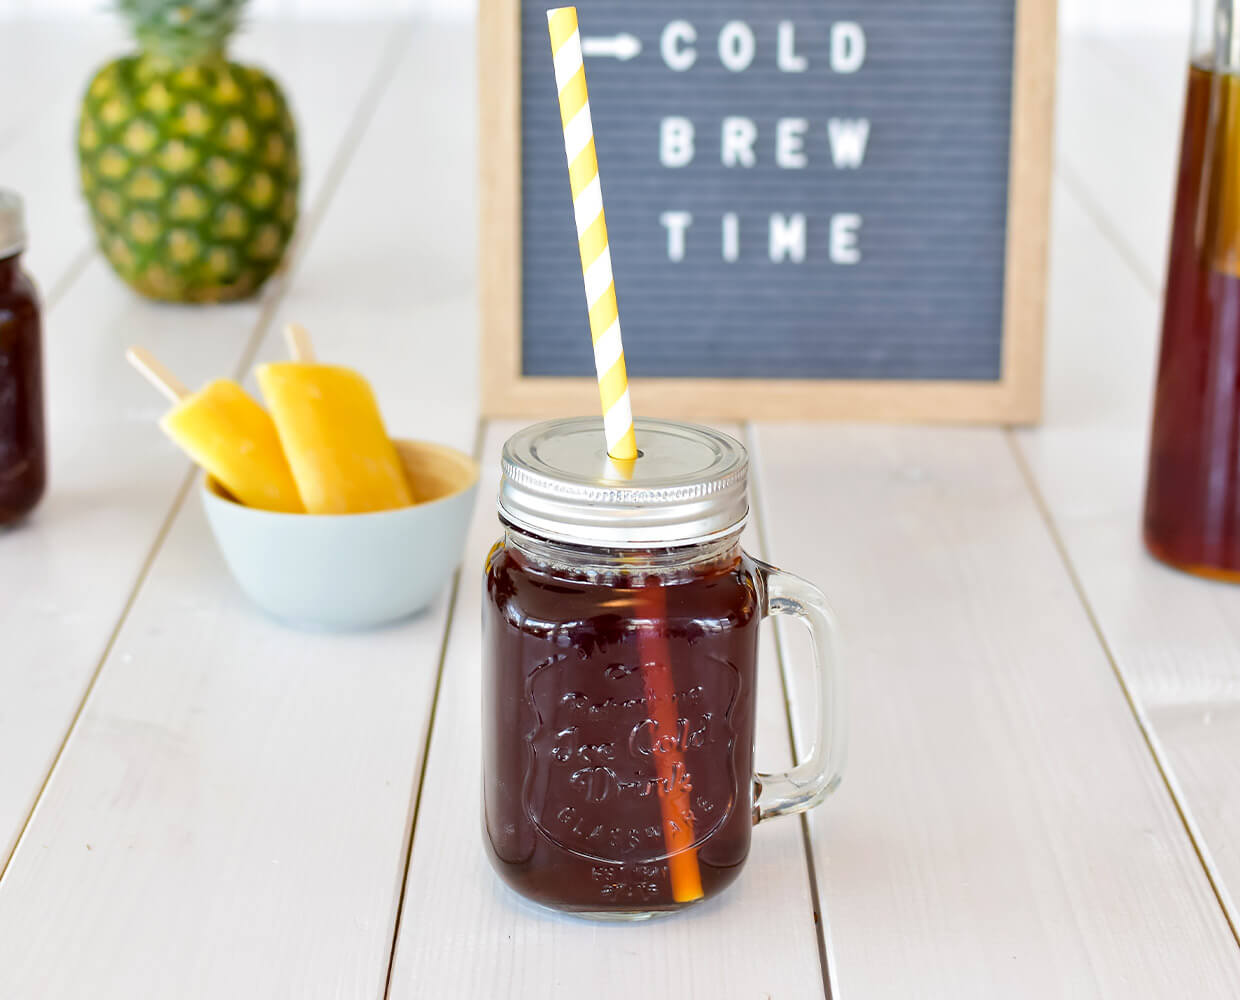 Vorne steht ein Glas mit Cold Brew Kaffee und Strohhalm und dahinter Eis am Stiel, eine Ananas und ein Schild mit dem Schiftzug Cold Brew Time